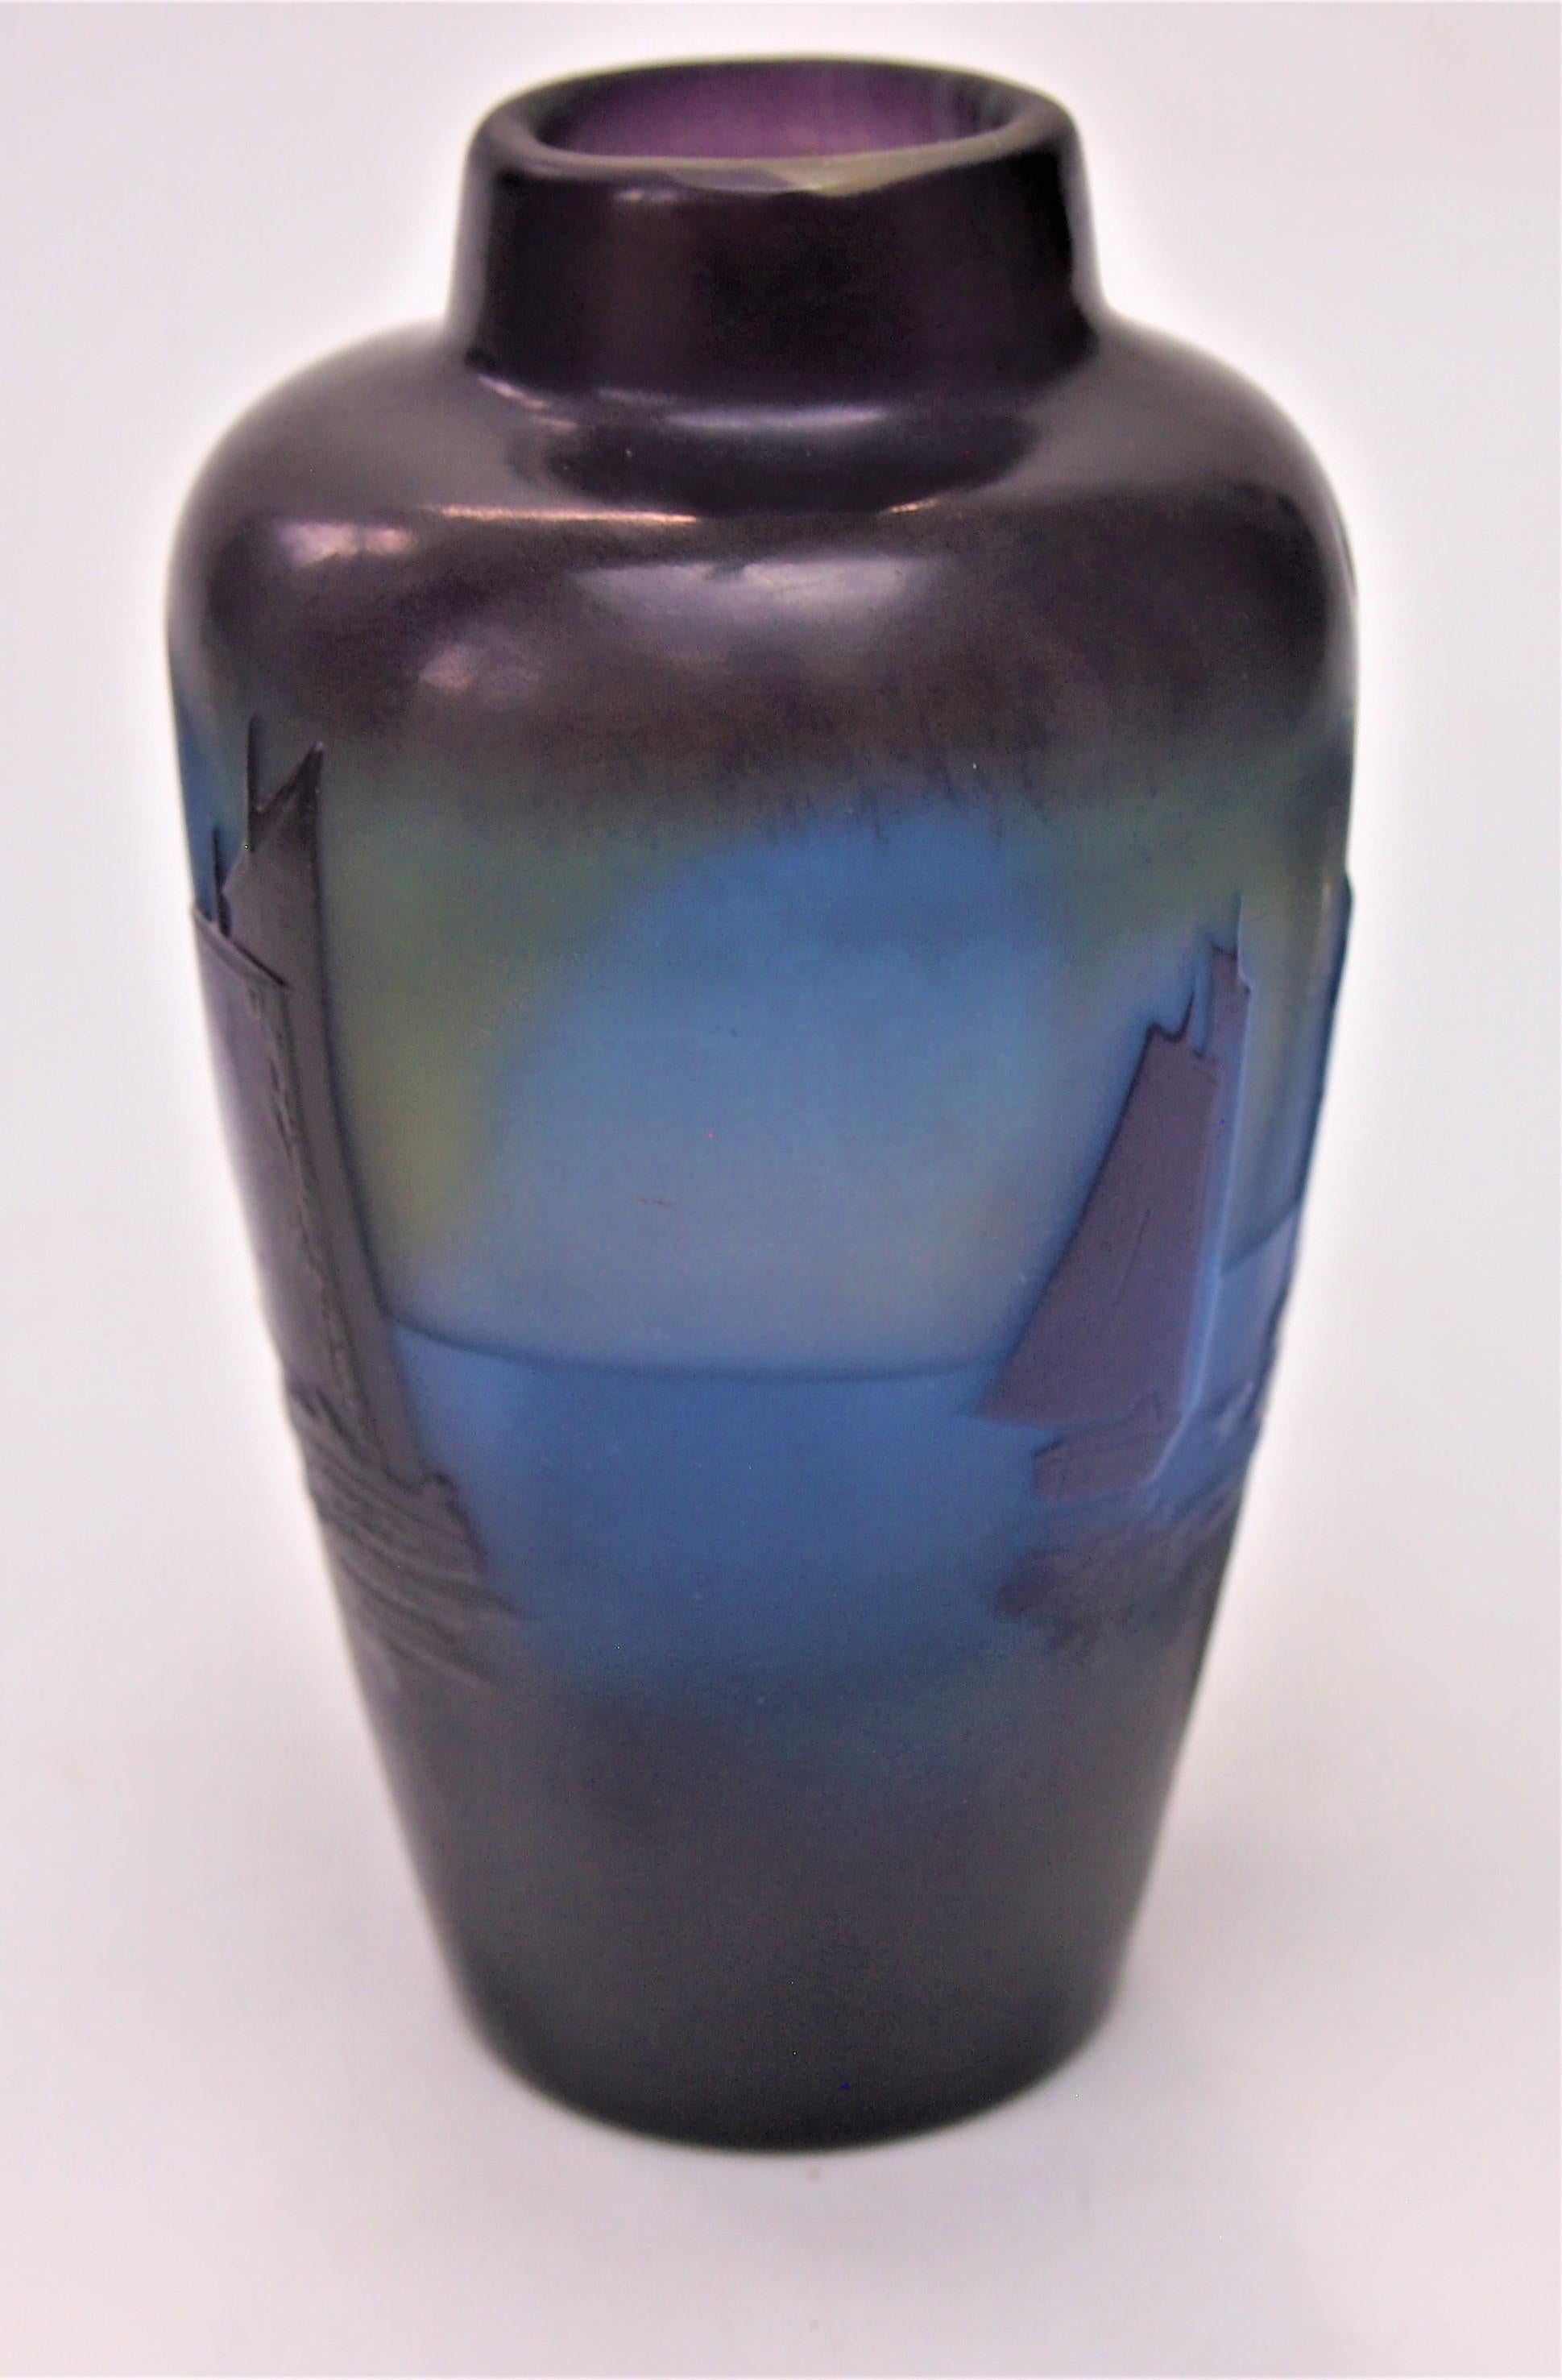 Fabuleux et rare vase en camée Emile Galle avec des voiliers à dominante bleue et violette avec des reflets jaunes orangés, signé (image 5) Provost MkIV produit vers 1920. Sur la plupart des voiliers, on peut voir de petites personnes assises. Les